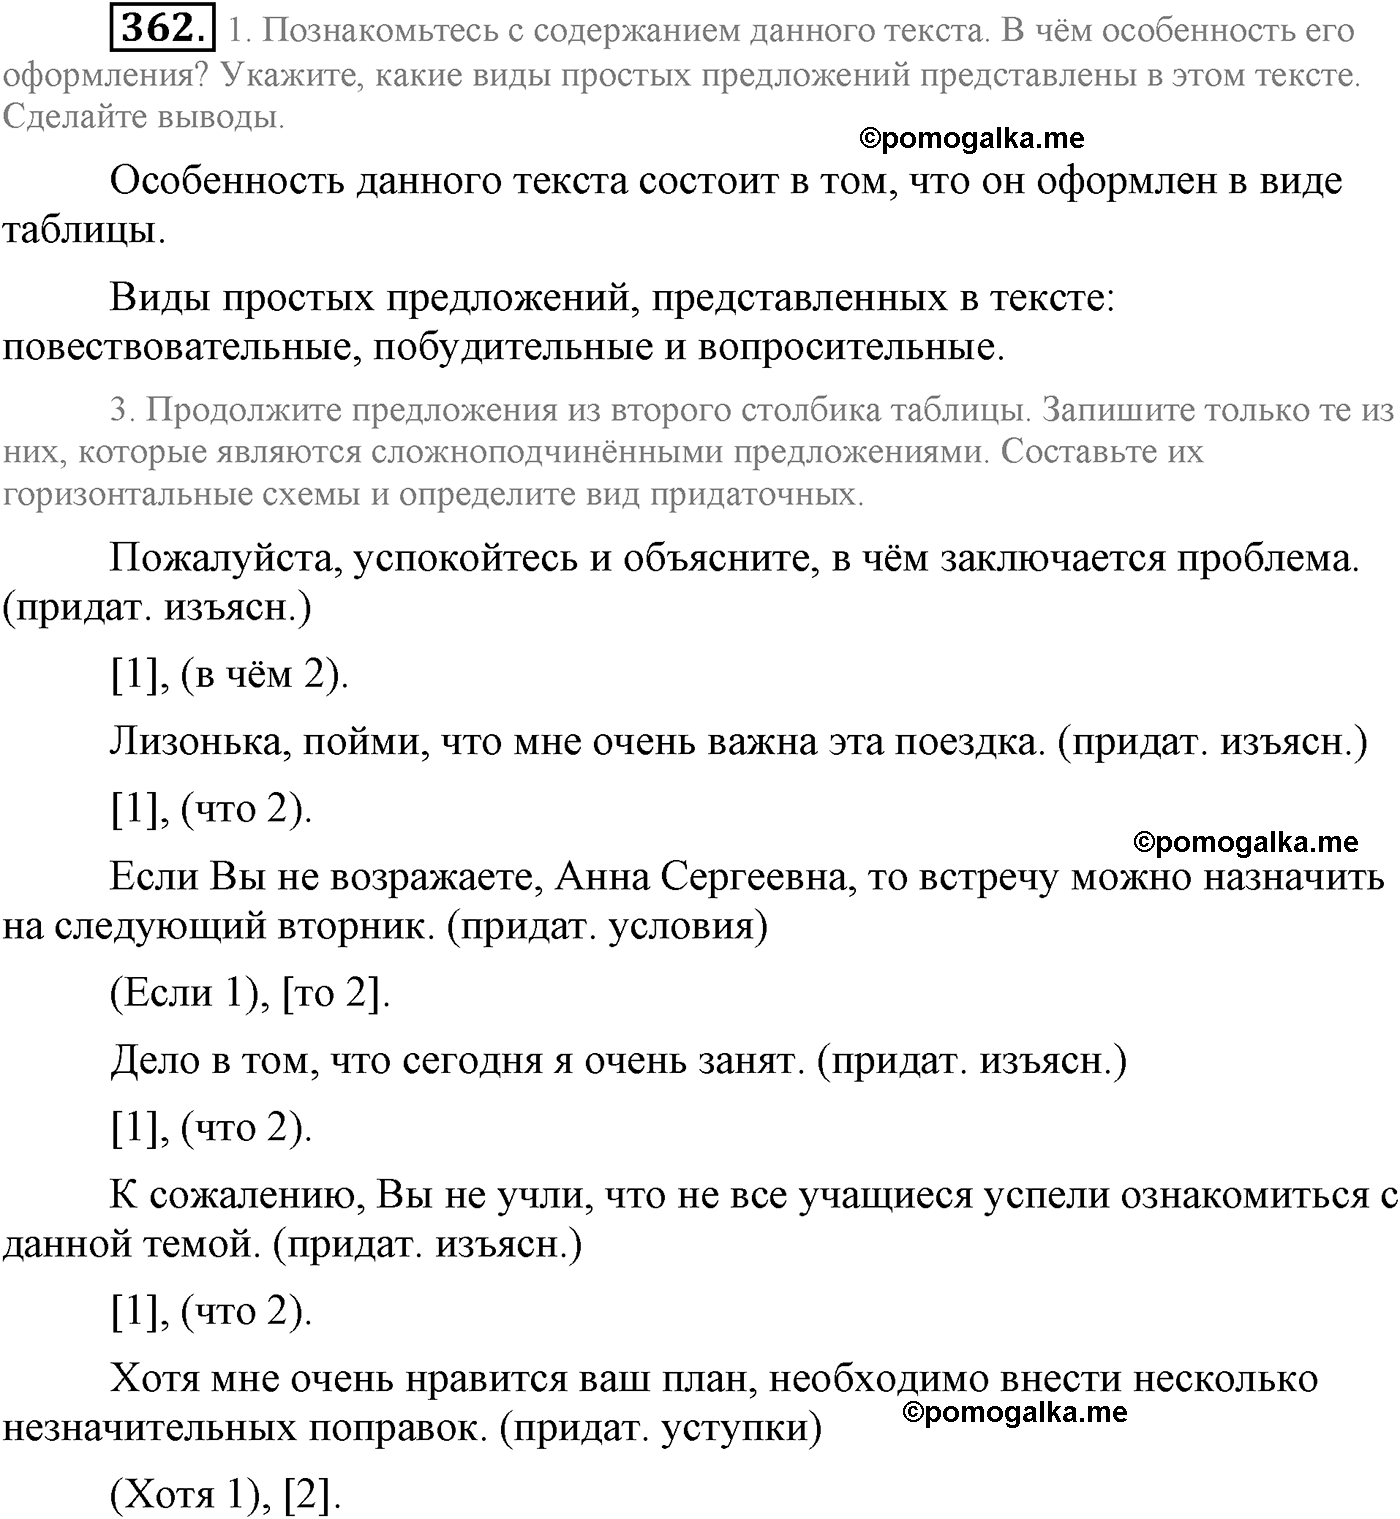 упражнение №362 русский язык 9 класс Львова